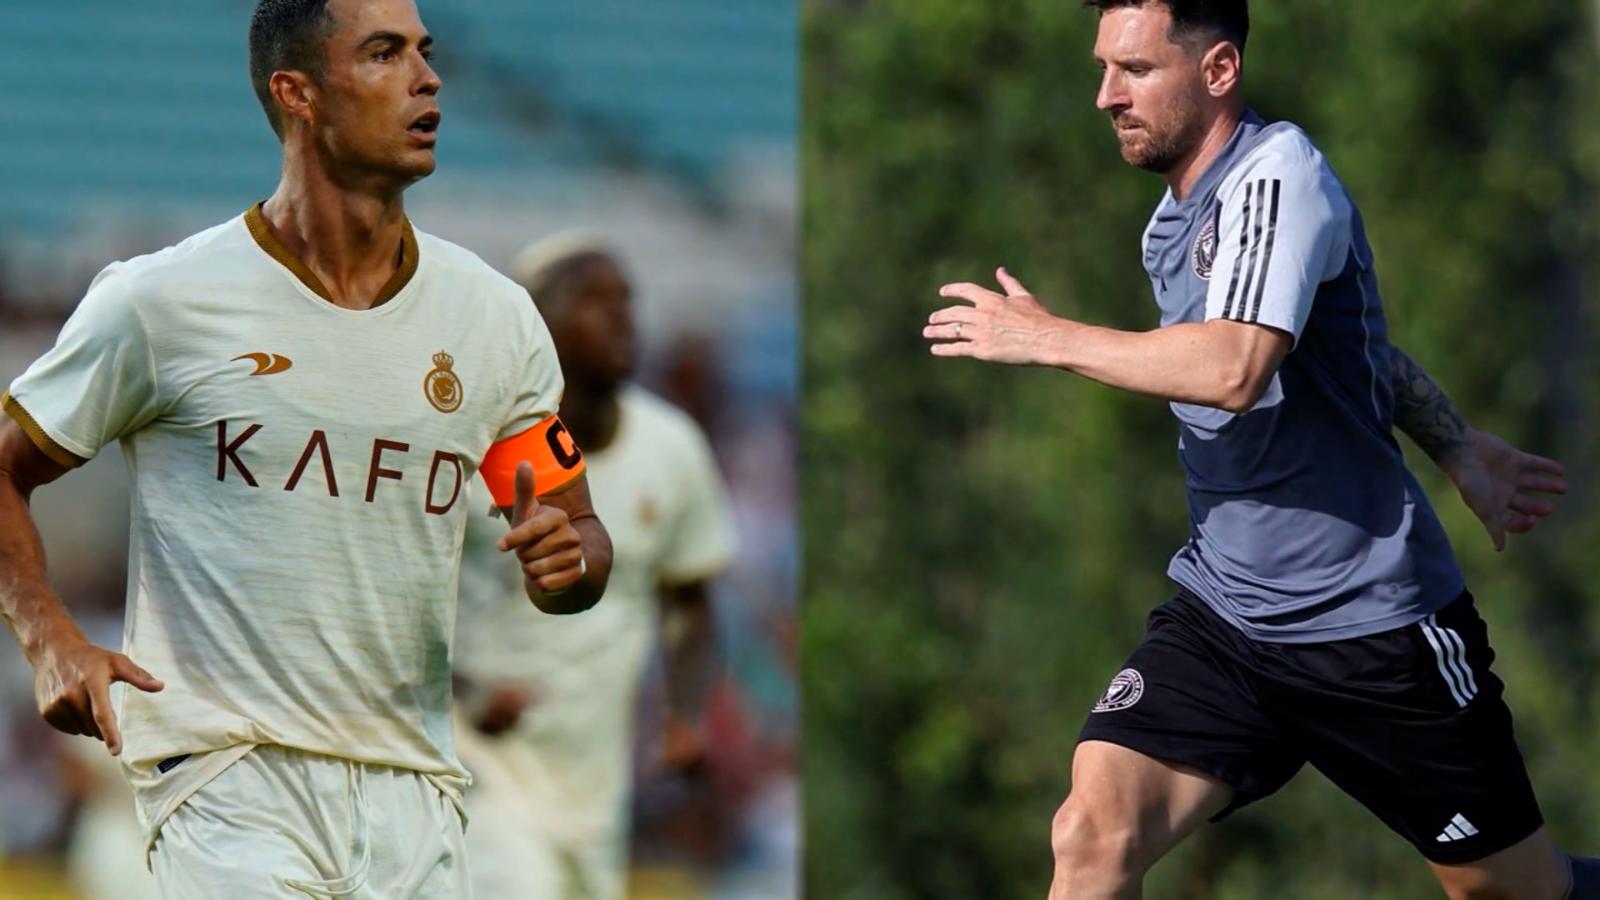 ¿Jugaría Cristiano Ronaldo en la MLS con Messi? Mira lo que dijo el
portugués